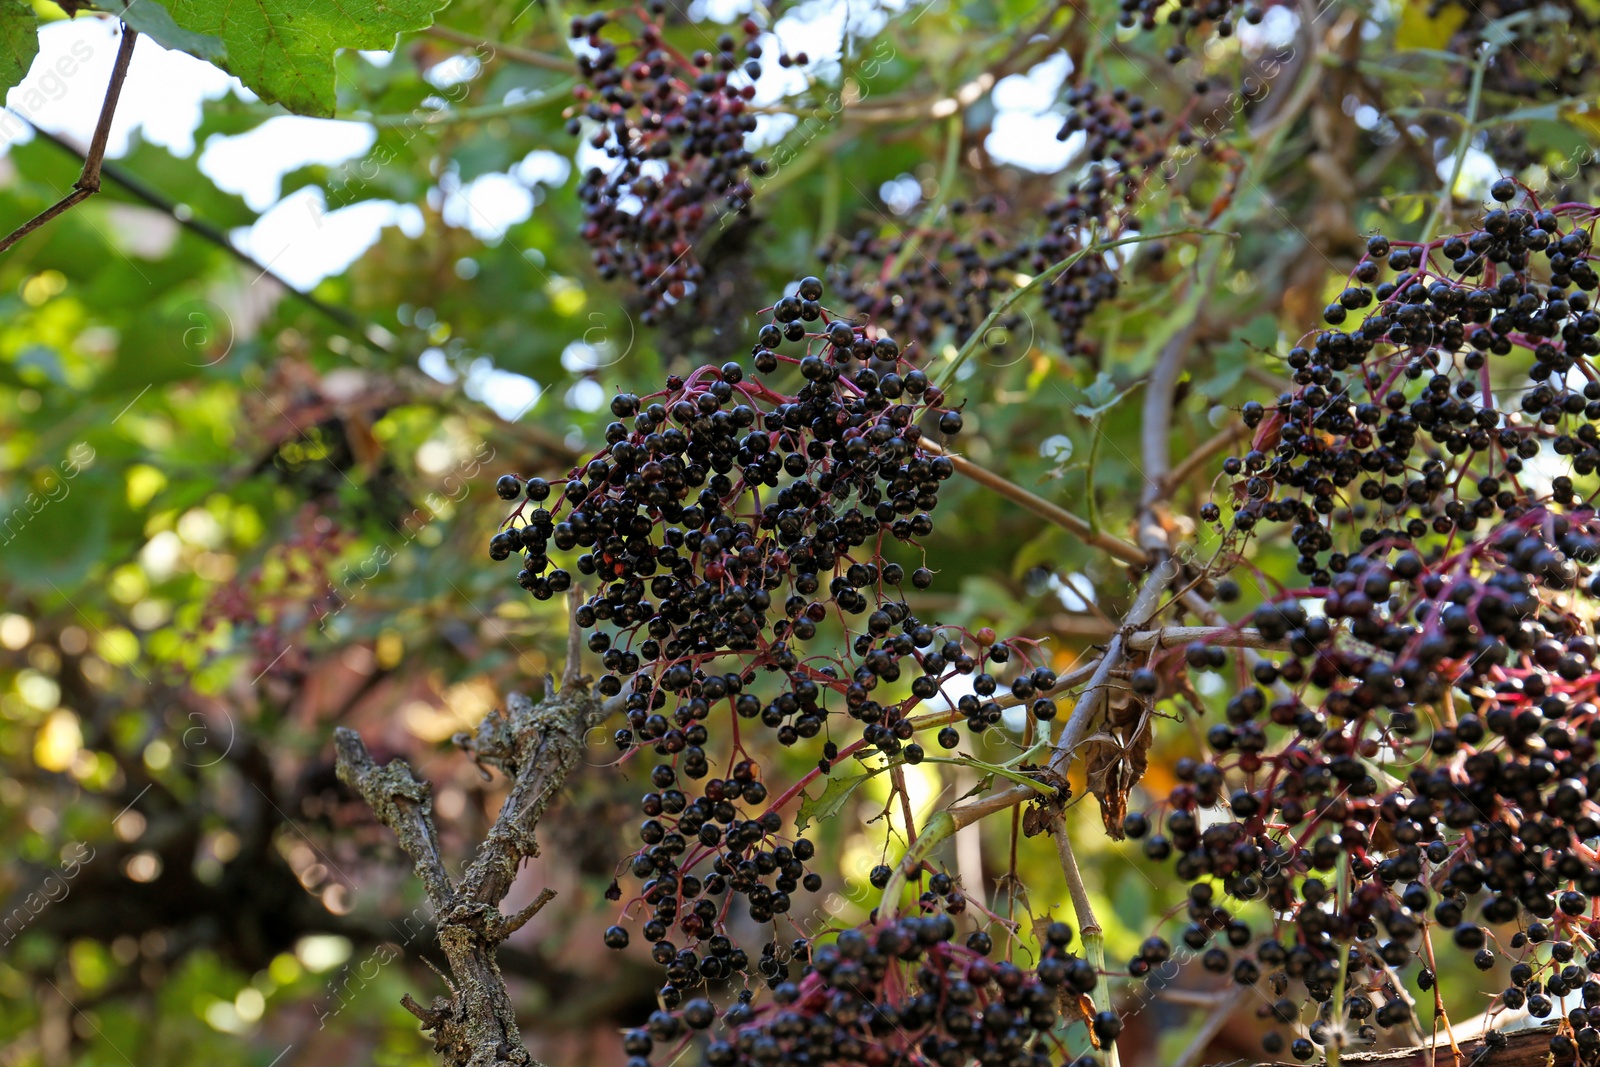 Photo of Tasty elderberries (Sambucus) growing on branch in garden